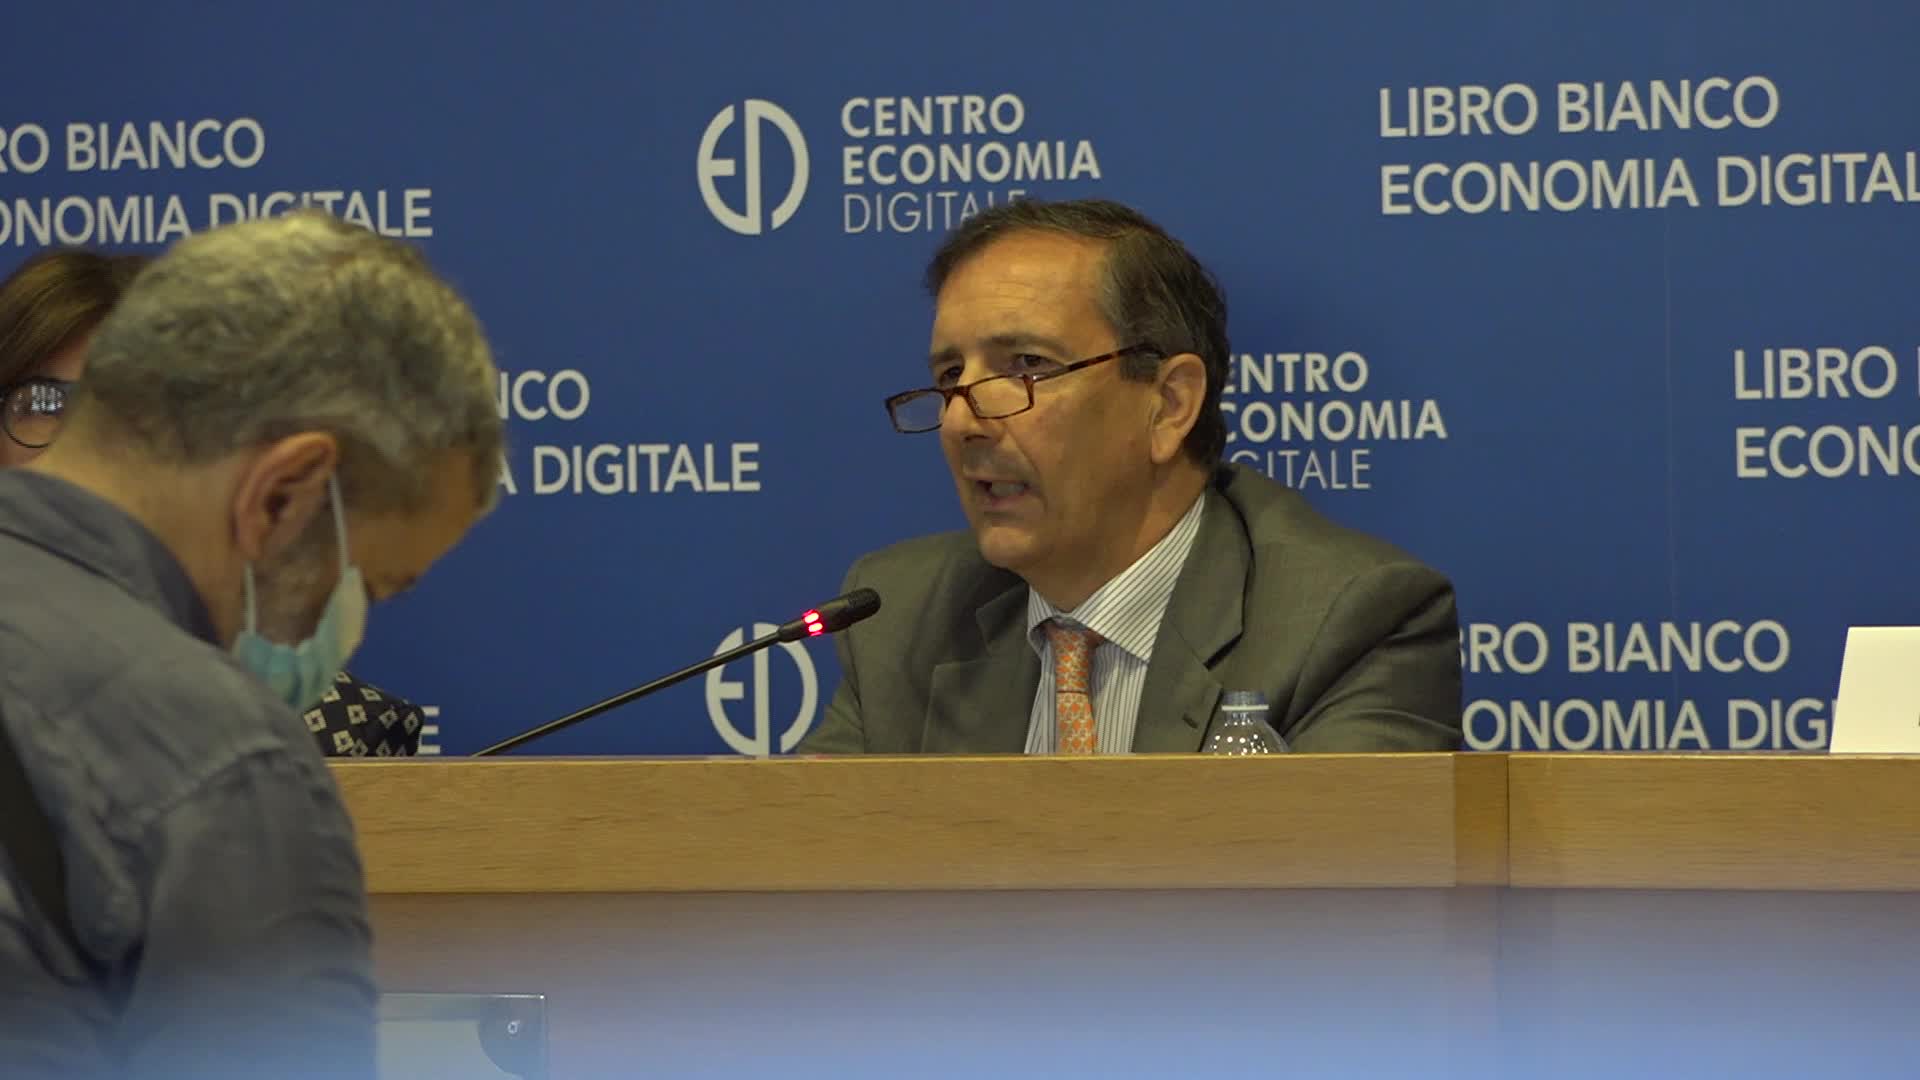 Libro Bianco Economia Digitale, Tim: “Milano sarà coperta al 90% dal 5G”